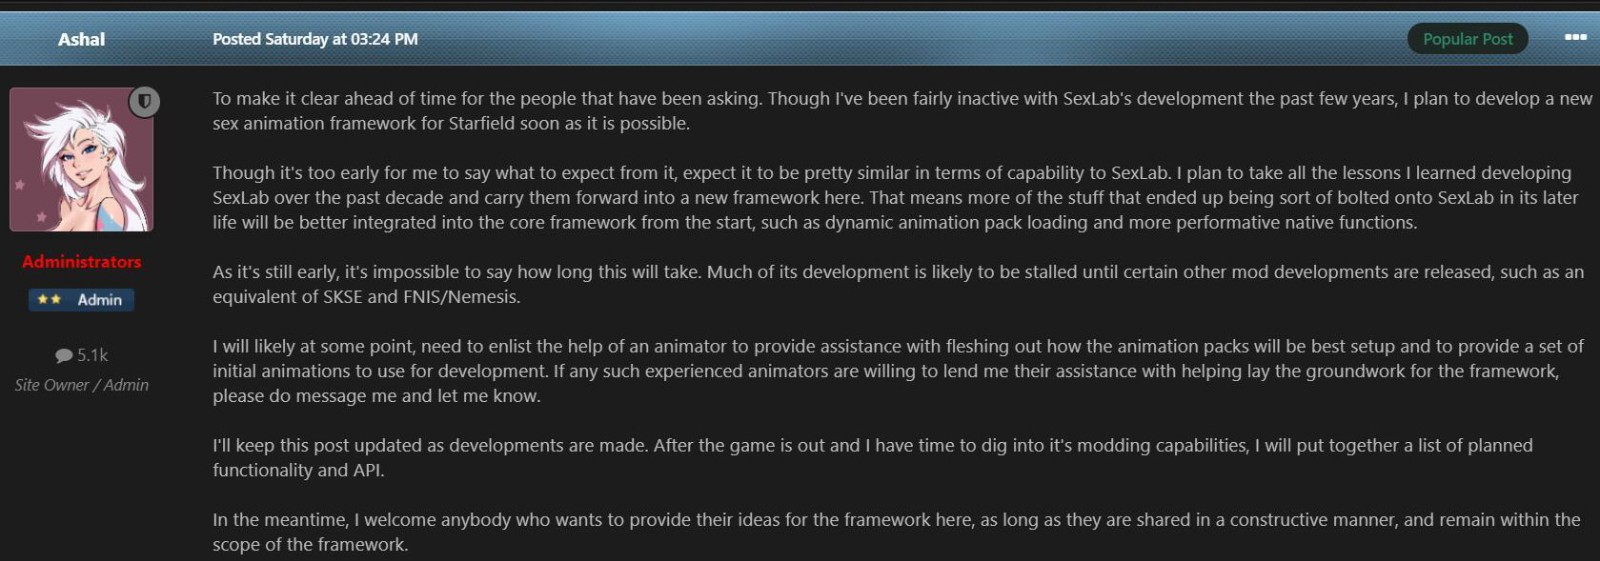 【PC游戏】知名成人Mod作者将为《星空》制作新Mod 为玩家送福利-第2张